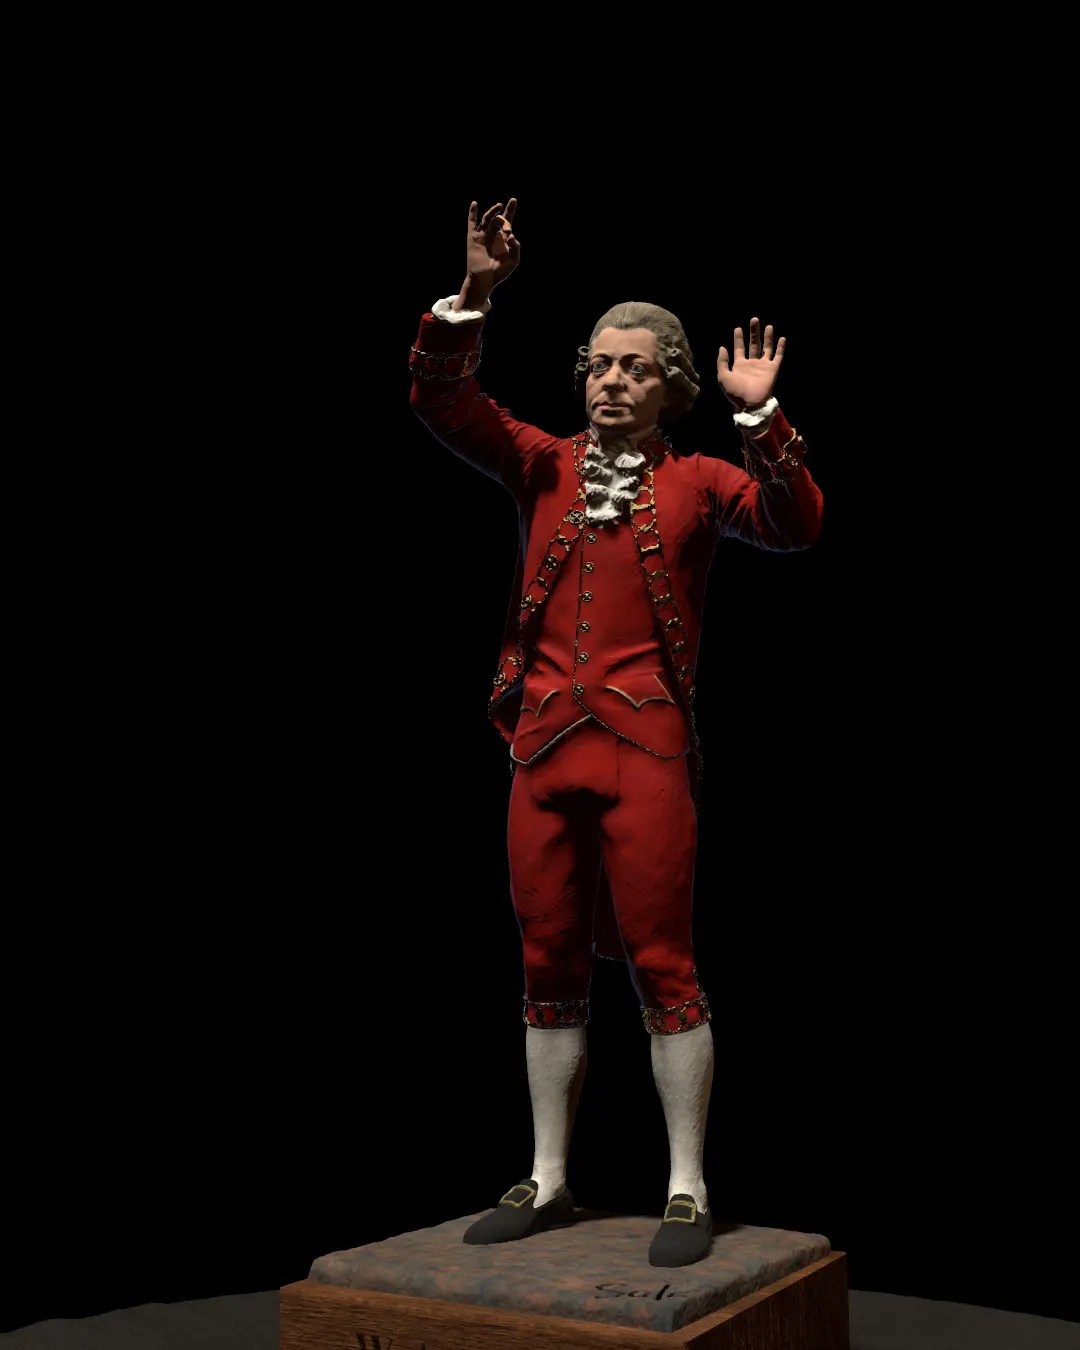 Wolfgang-Amadeus-Mozart-statue/Rendering-of-Wolfgang-Amadeus-Mozart-statue-modeled-by-Emil-Sole-4.webp